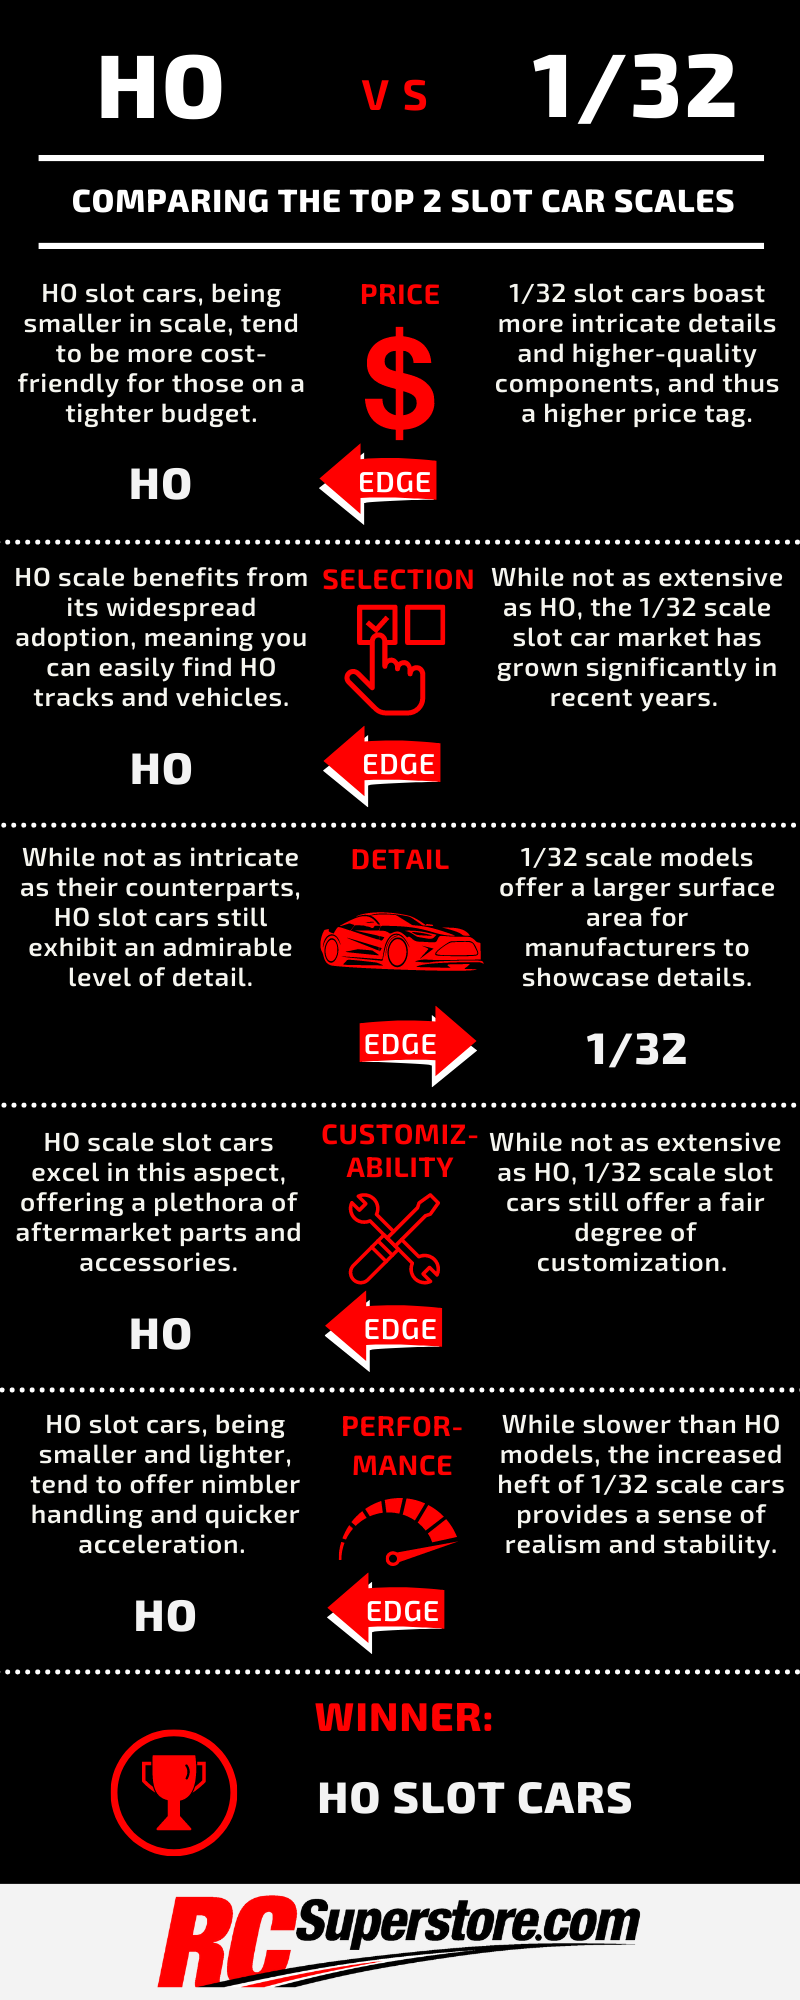 HO vs 1/32 Slot Car Comparison Infographic